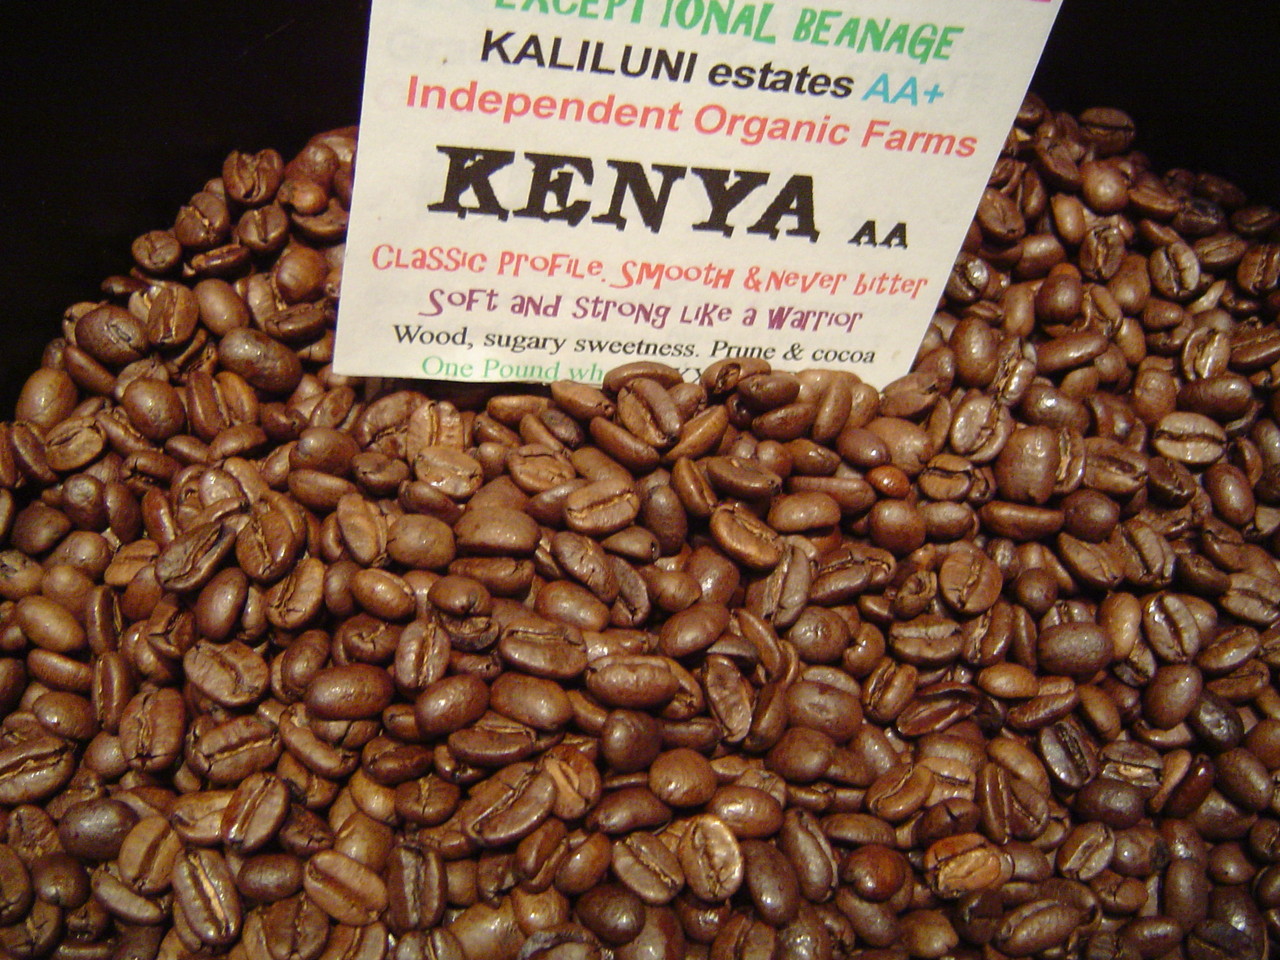 肯尼亚咖啡豆推荐 肯尼亚咖啡豆SL品种特点 肯亚aa咖啡特点鲜明 中国咖啡网